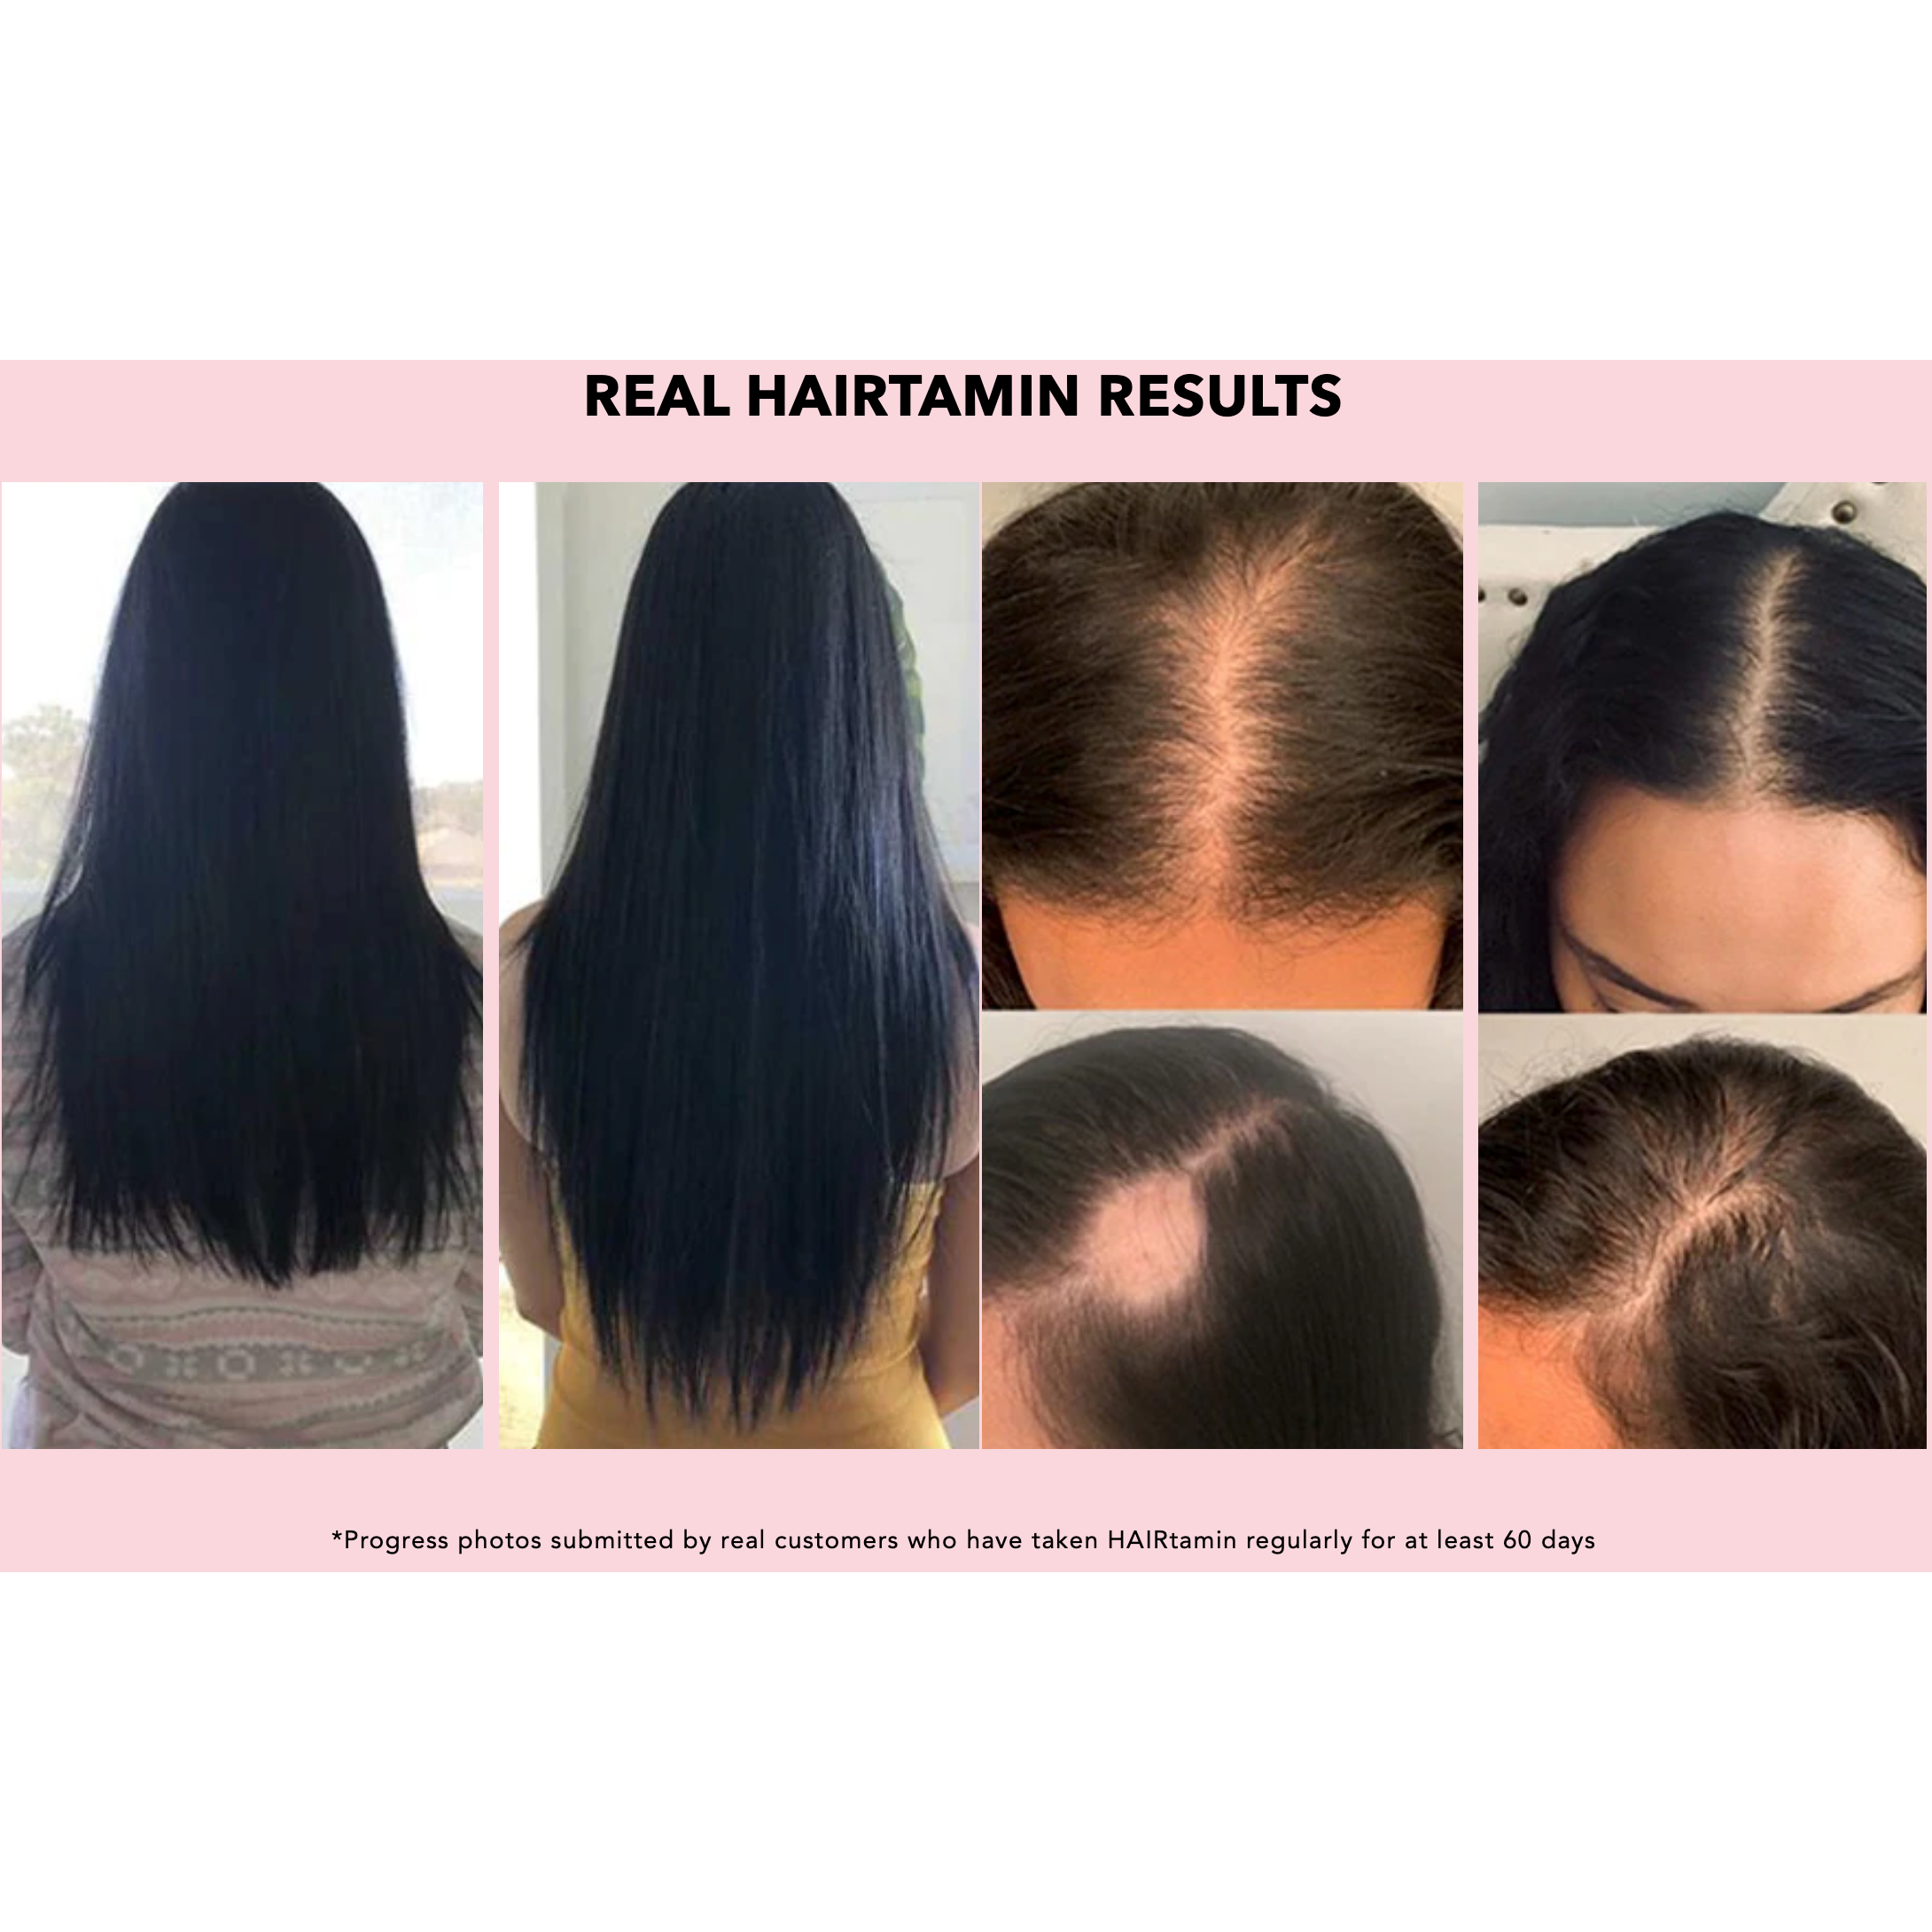 فيتامينات الشعر النباتية من هيرتامين لنمو أسرع للشعر مع البيوتين الطبيعي لدعم صحة الشعر والبشرة والأظافر، 30 كبسولة نباتية